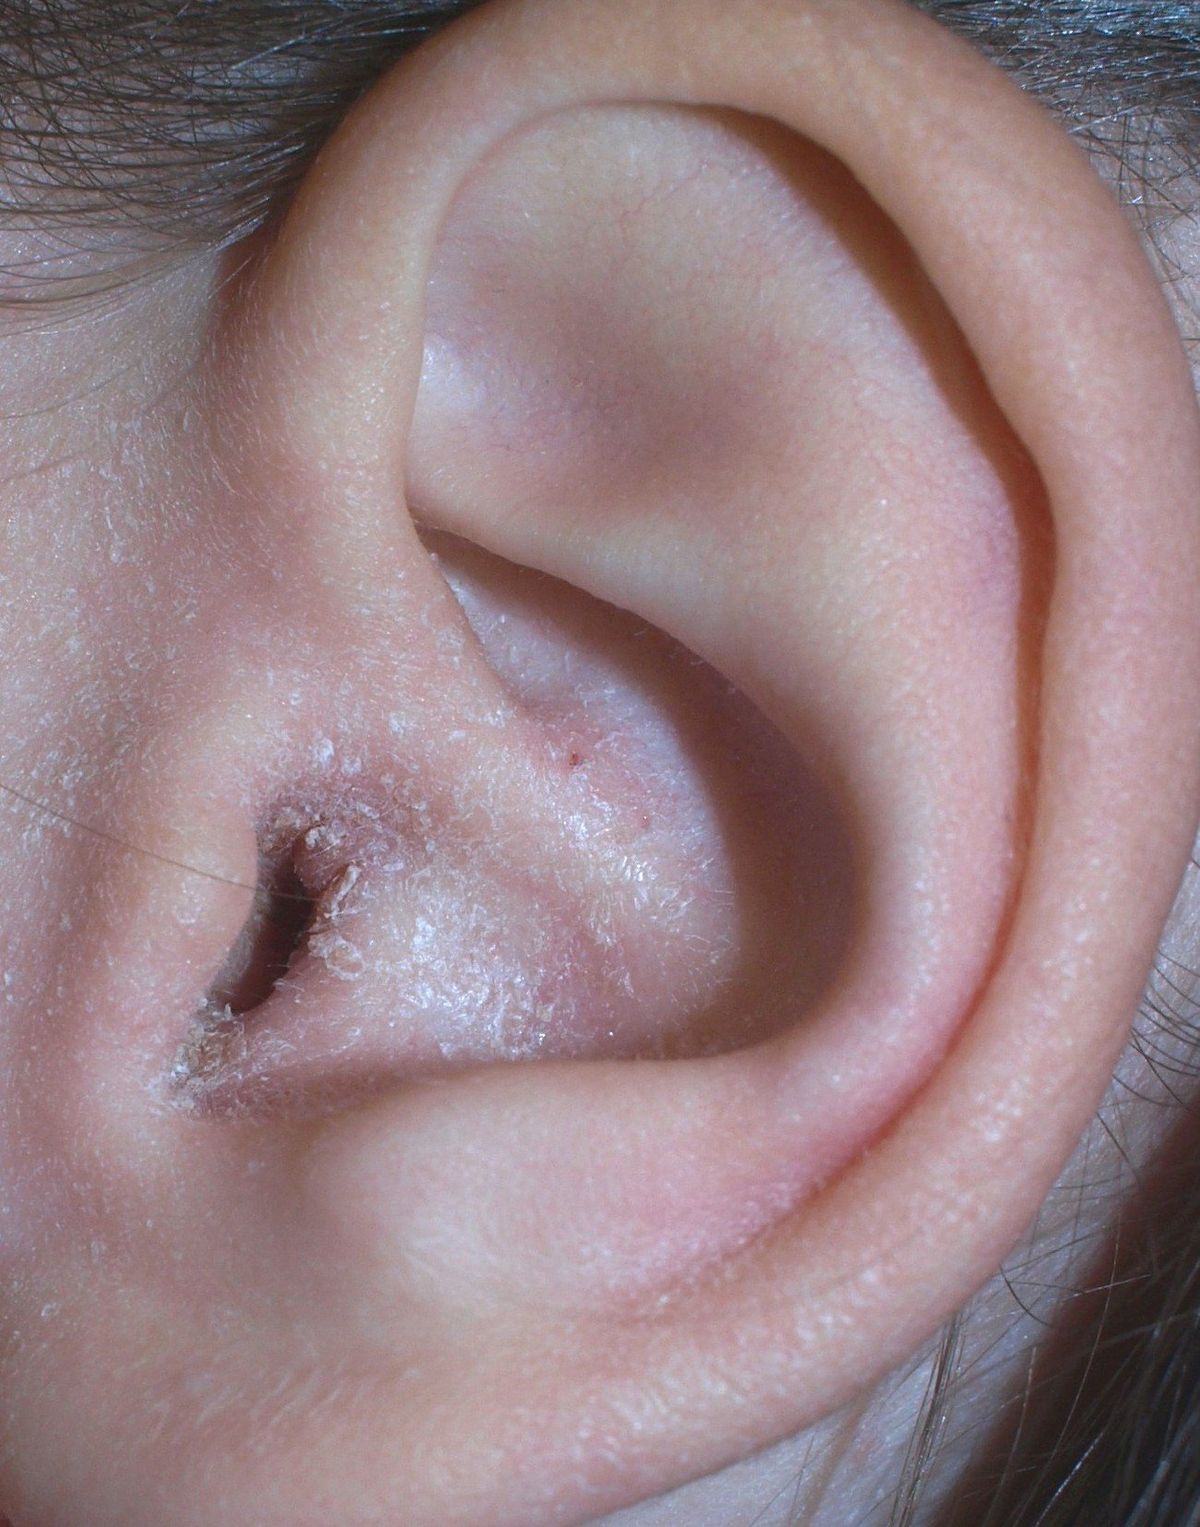 šupinaté ucho